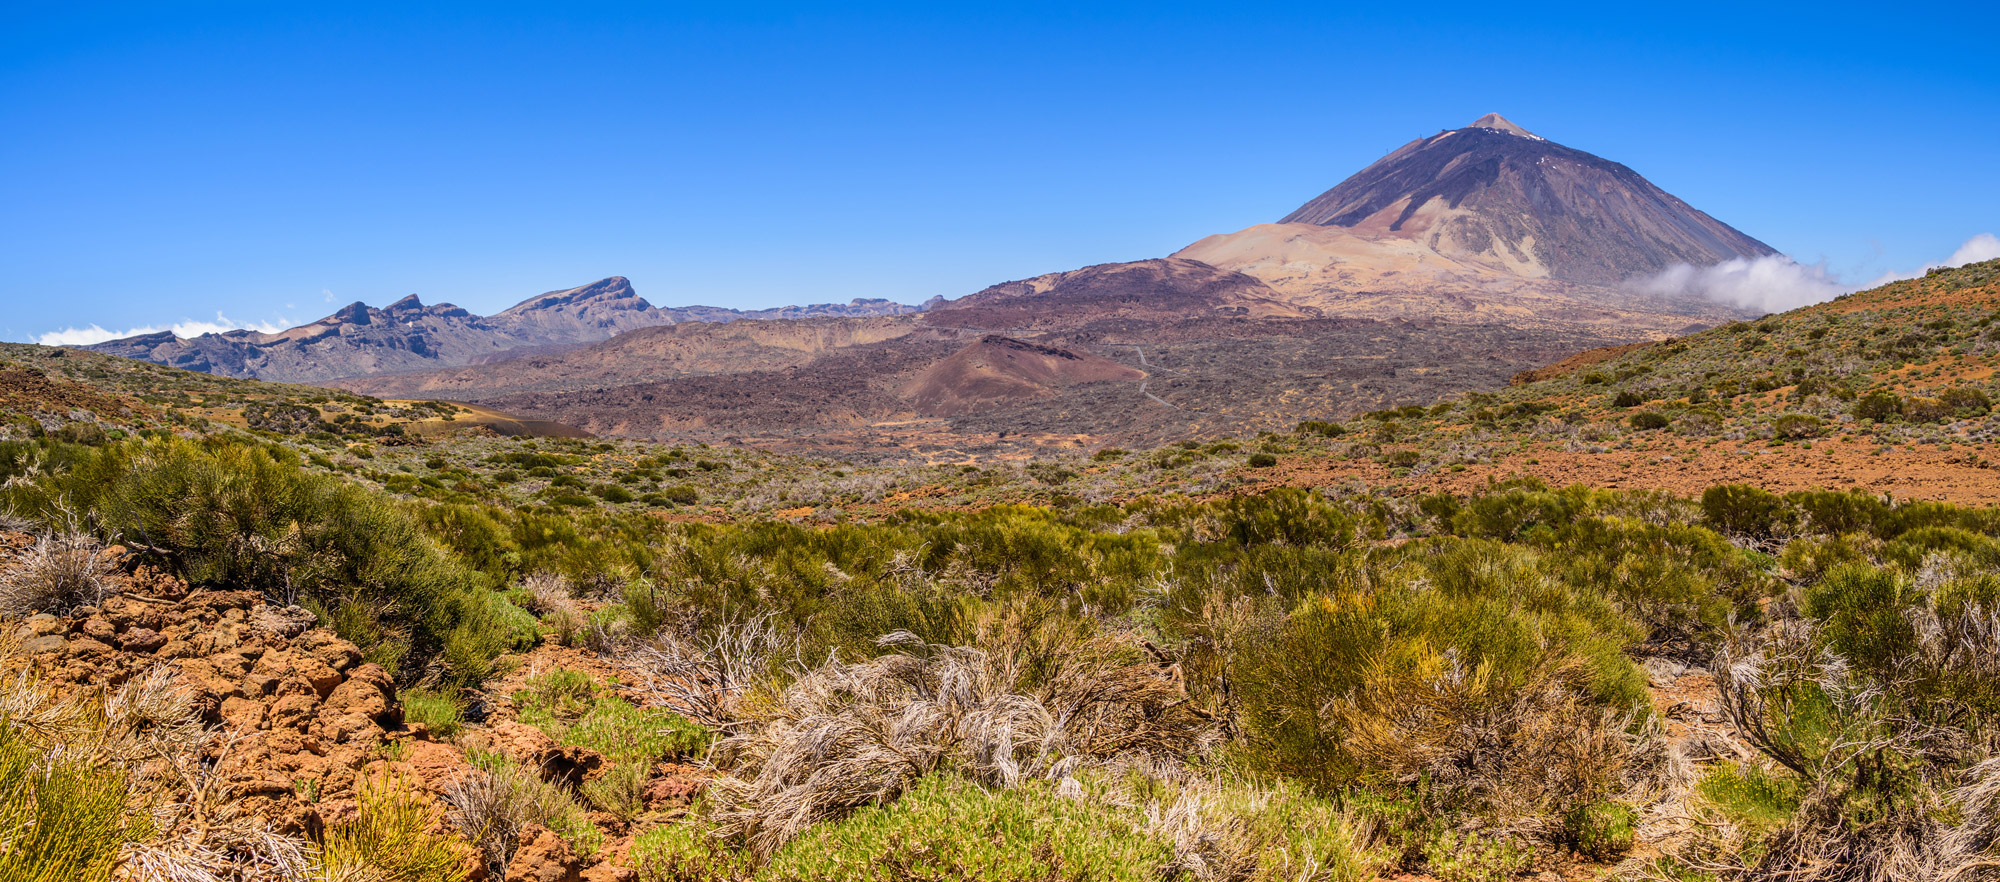 Gratis activiteiten op Tenerife - Teide Vulkaan